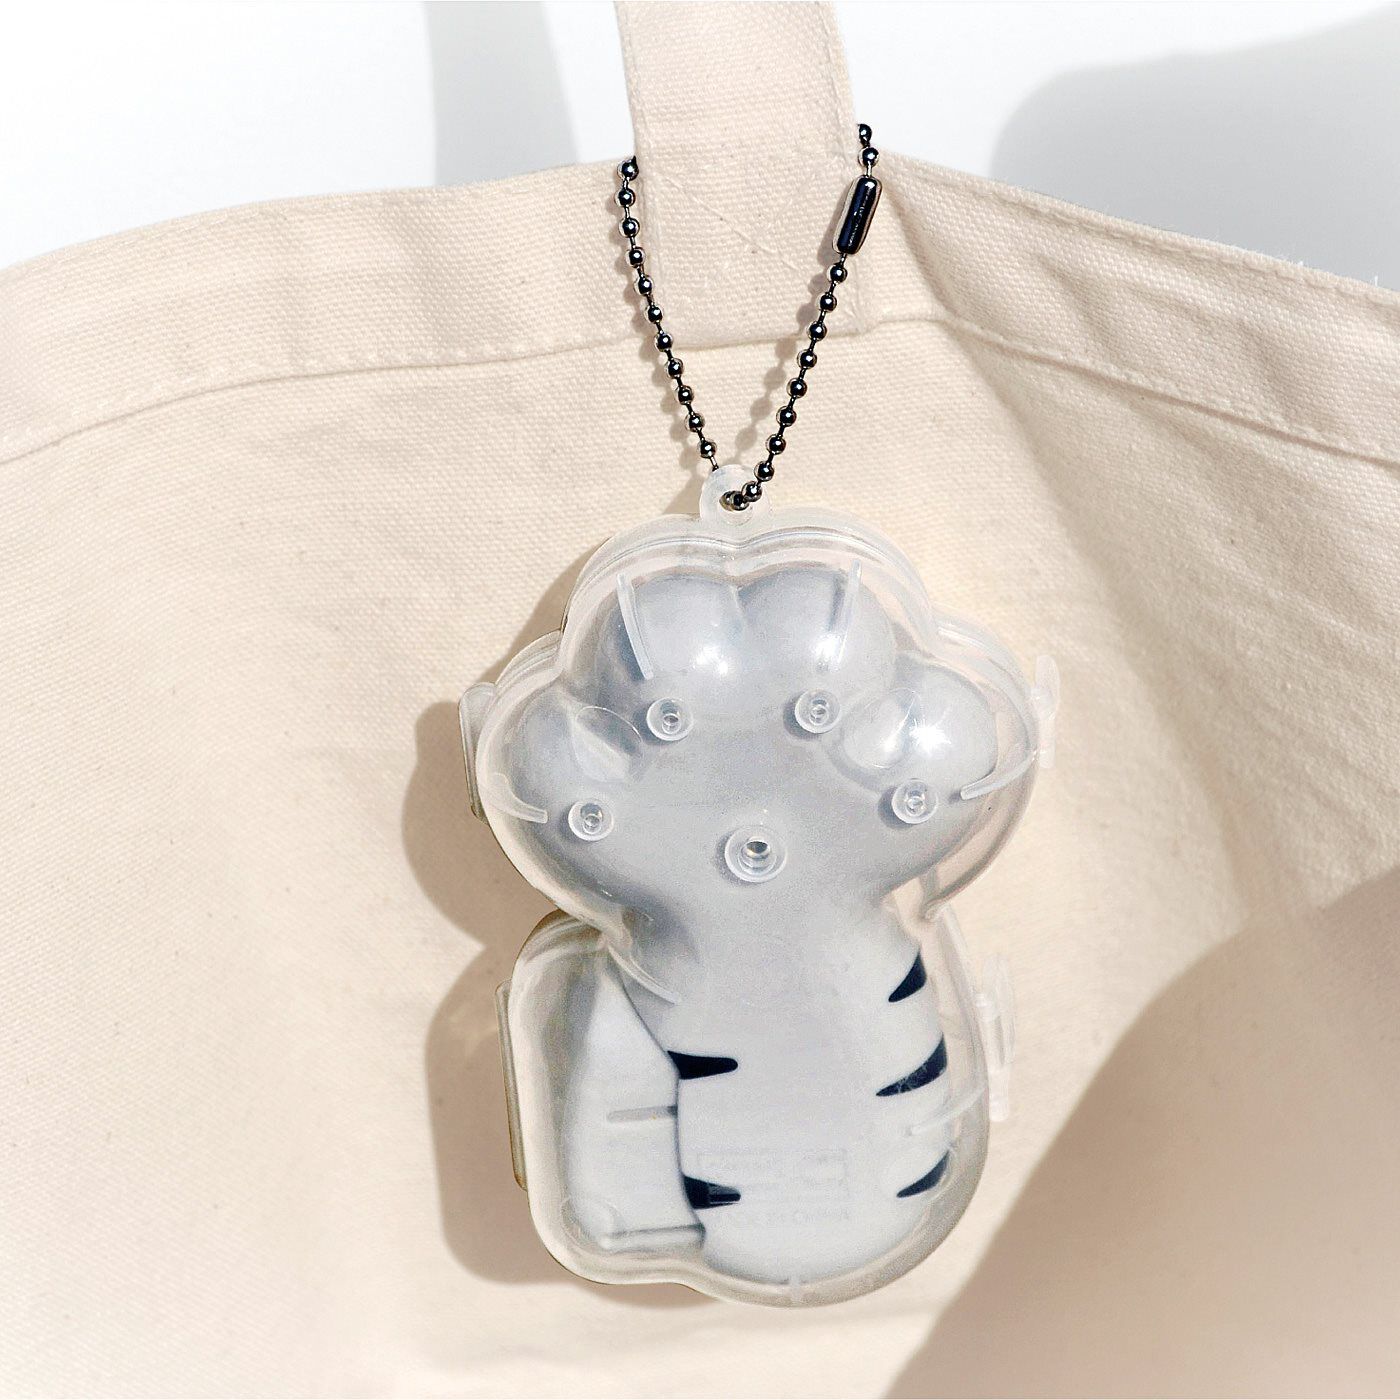 L'AMIPLUS|携帯できるかわいいマイソープディスペンサー　泡にゃん〈アメショ〉|バッグの持ち手に取り付けられるチェーン付き透明ケース。